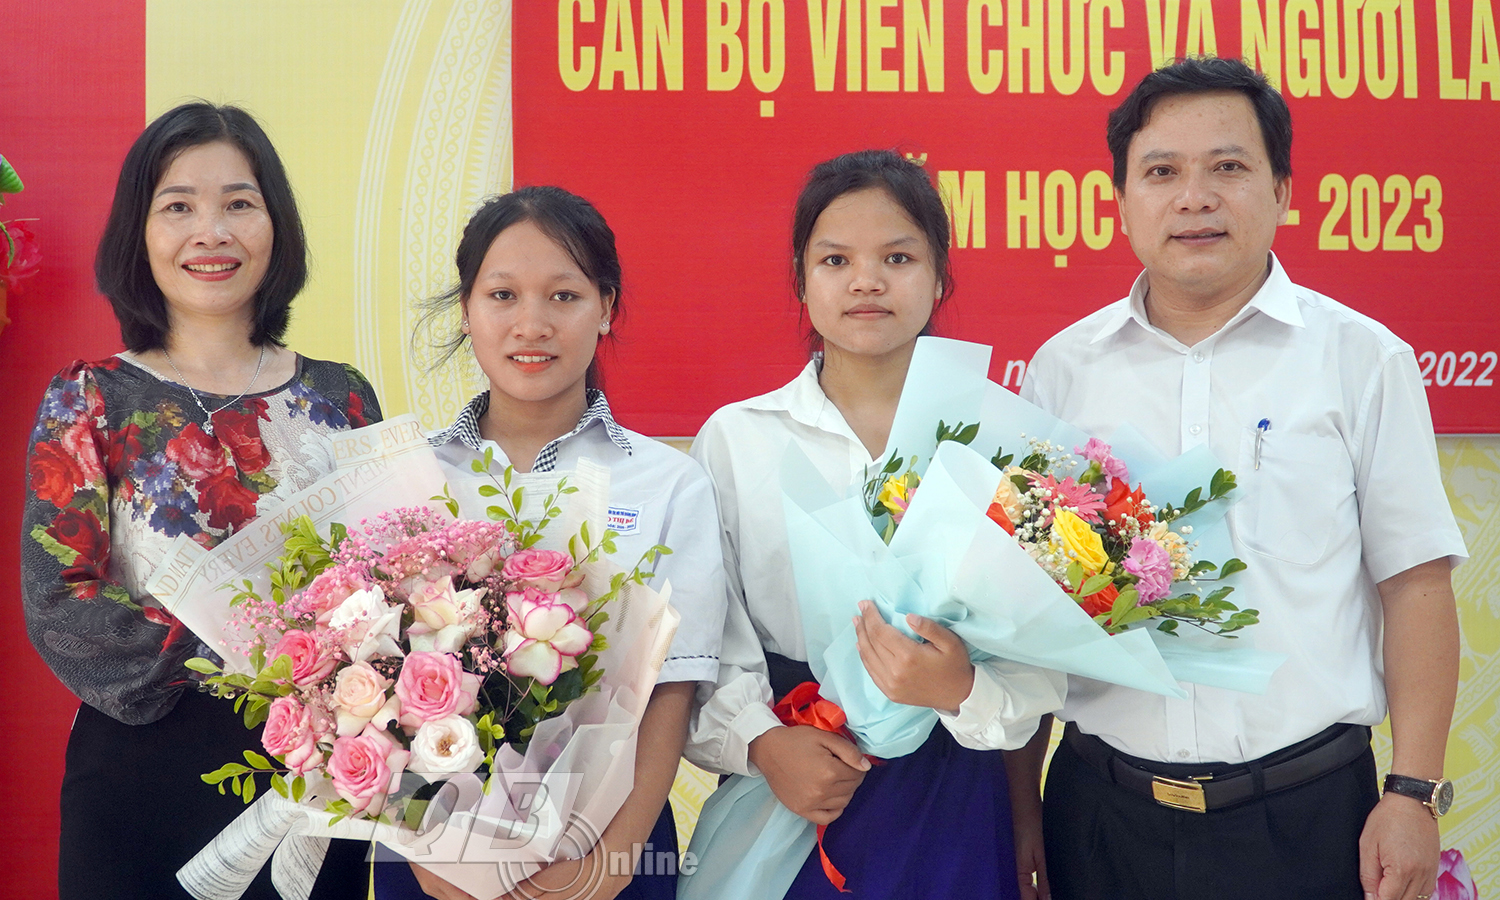 Thầy giáo hiệu trưởng Phạm Hồng Việt và cô giáo chủ nhiệm Nguyễn Thj Dung chúc mừng hai em